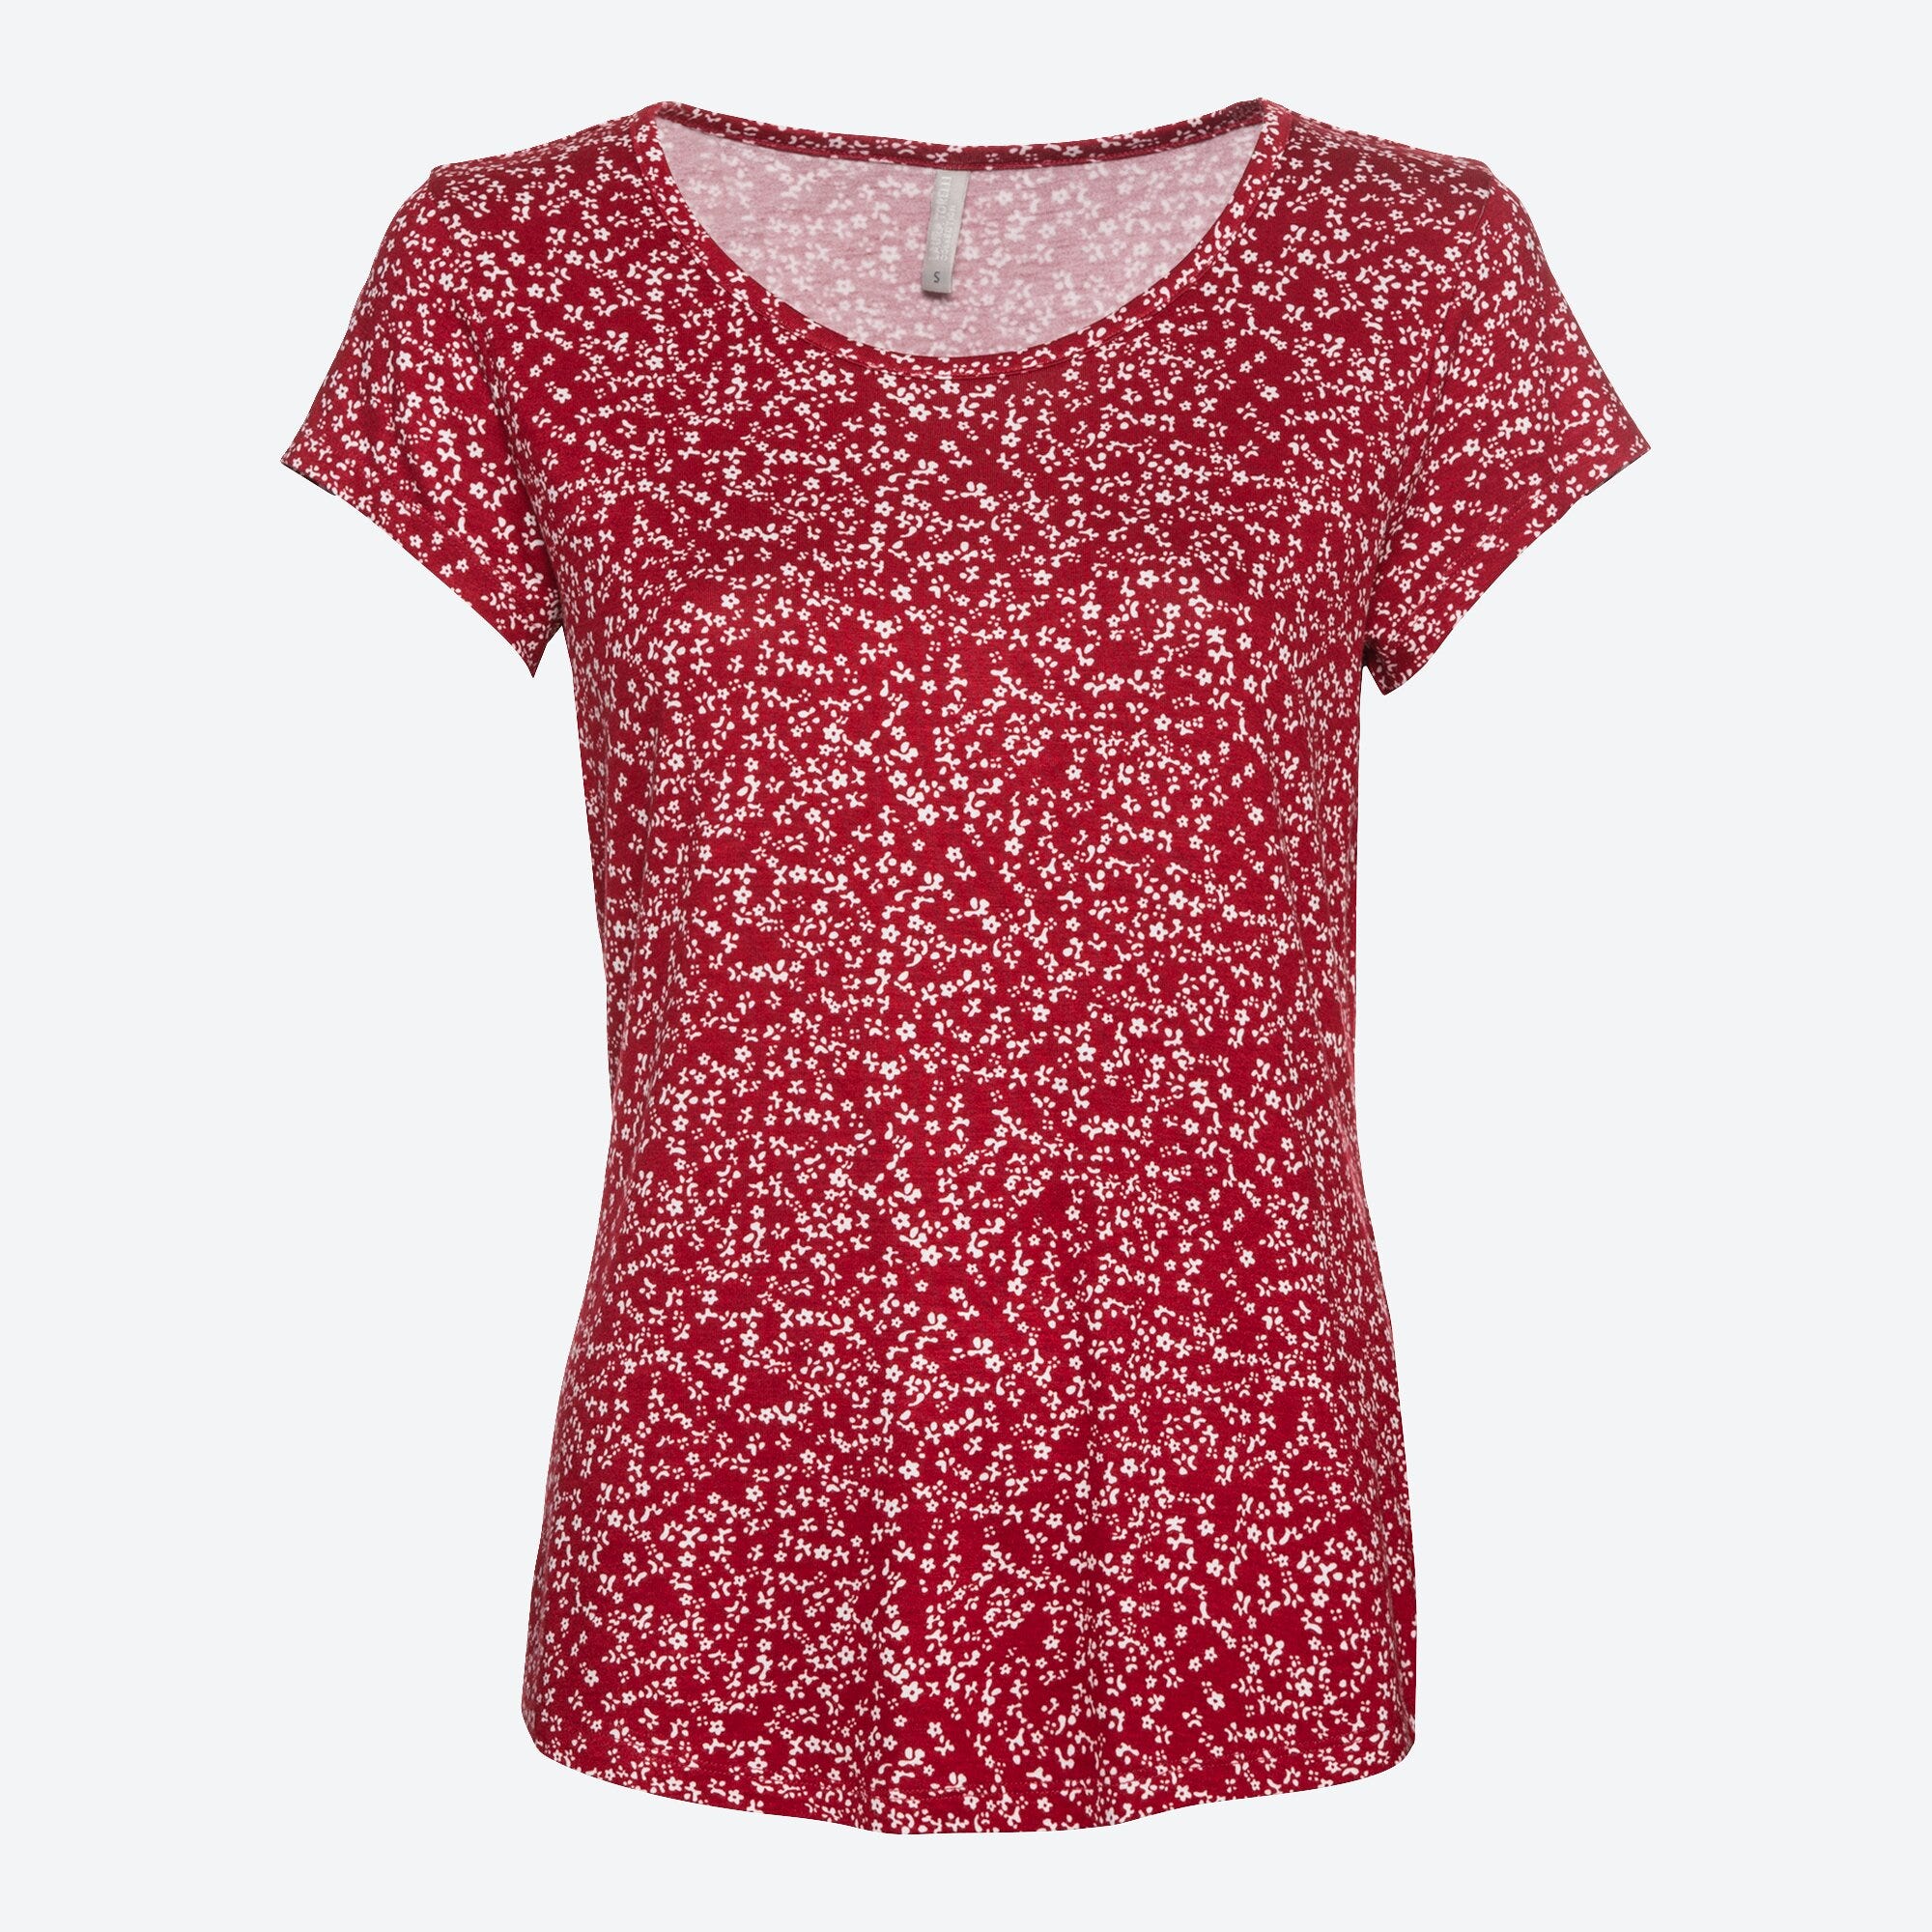 Damen-T-Shirt mit hübschem Muster